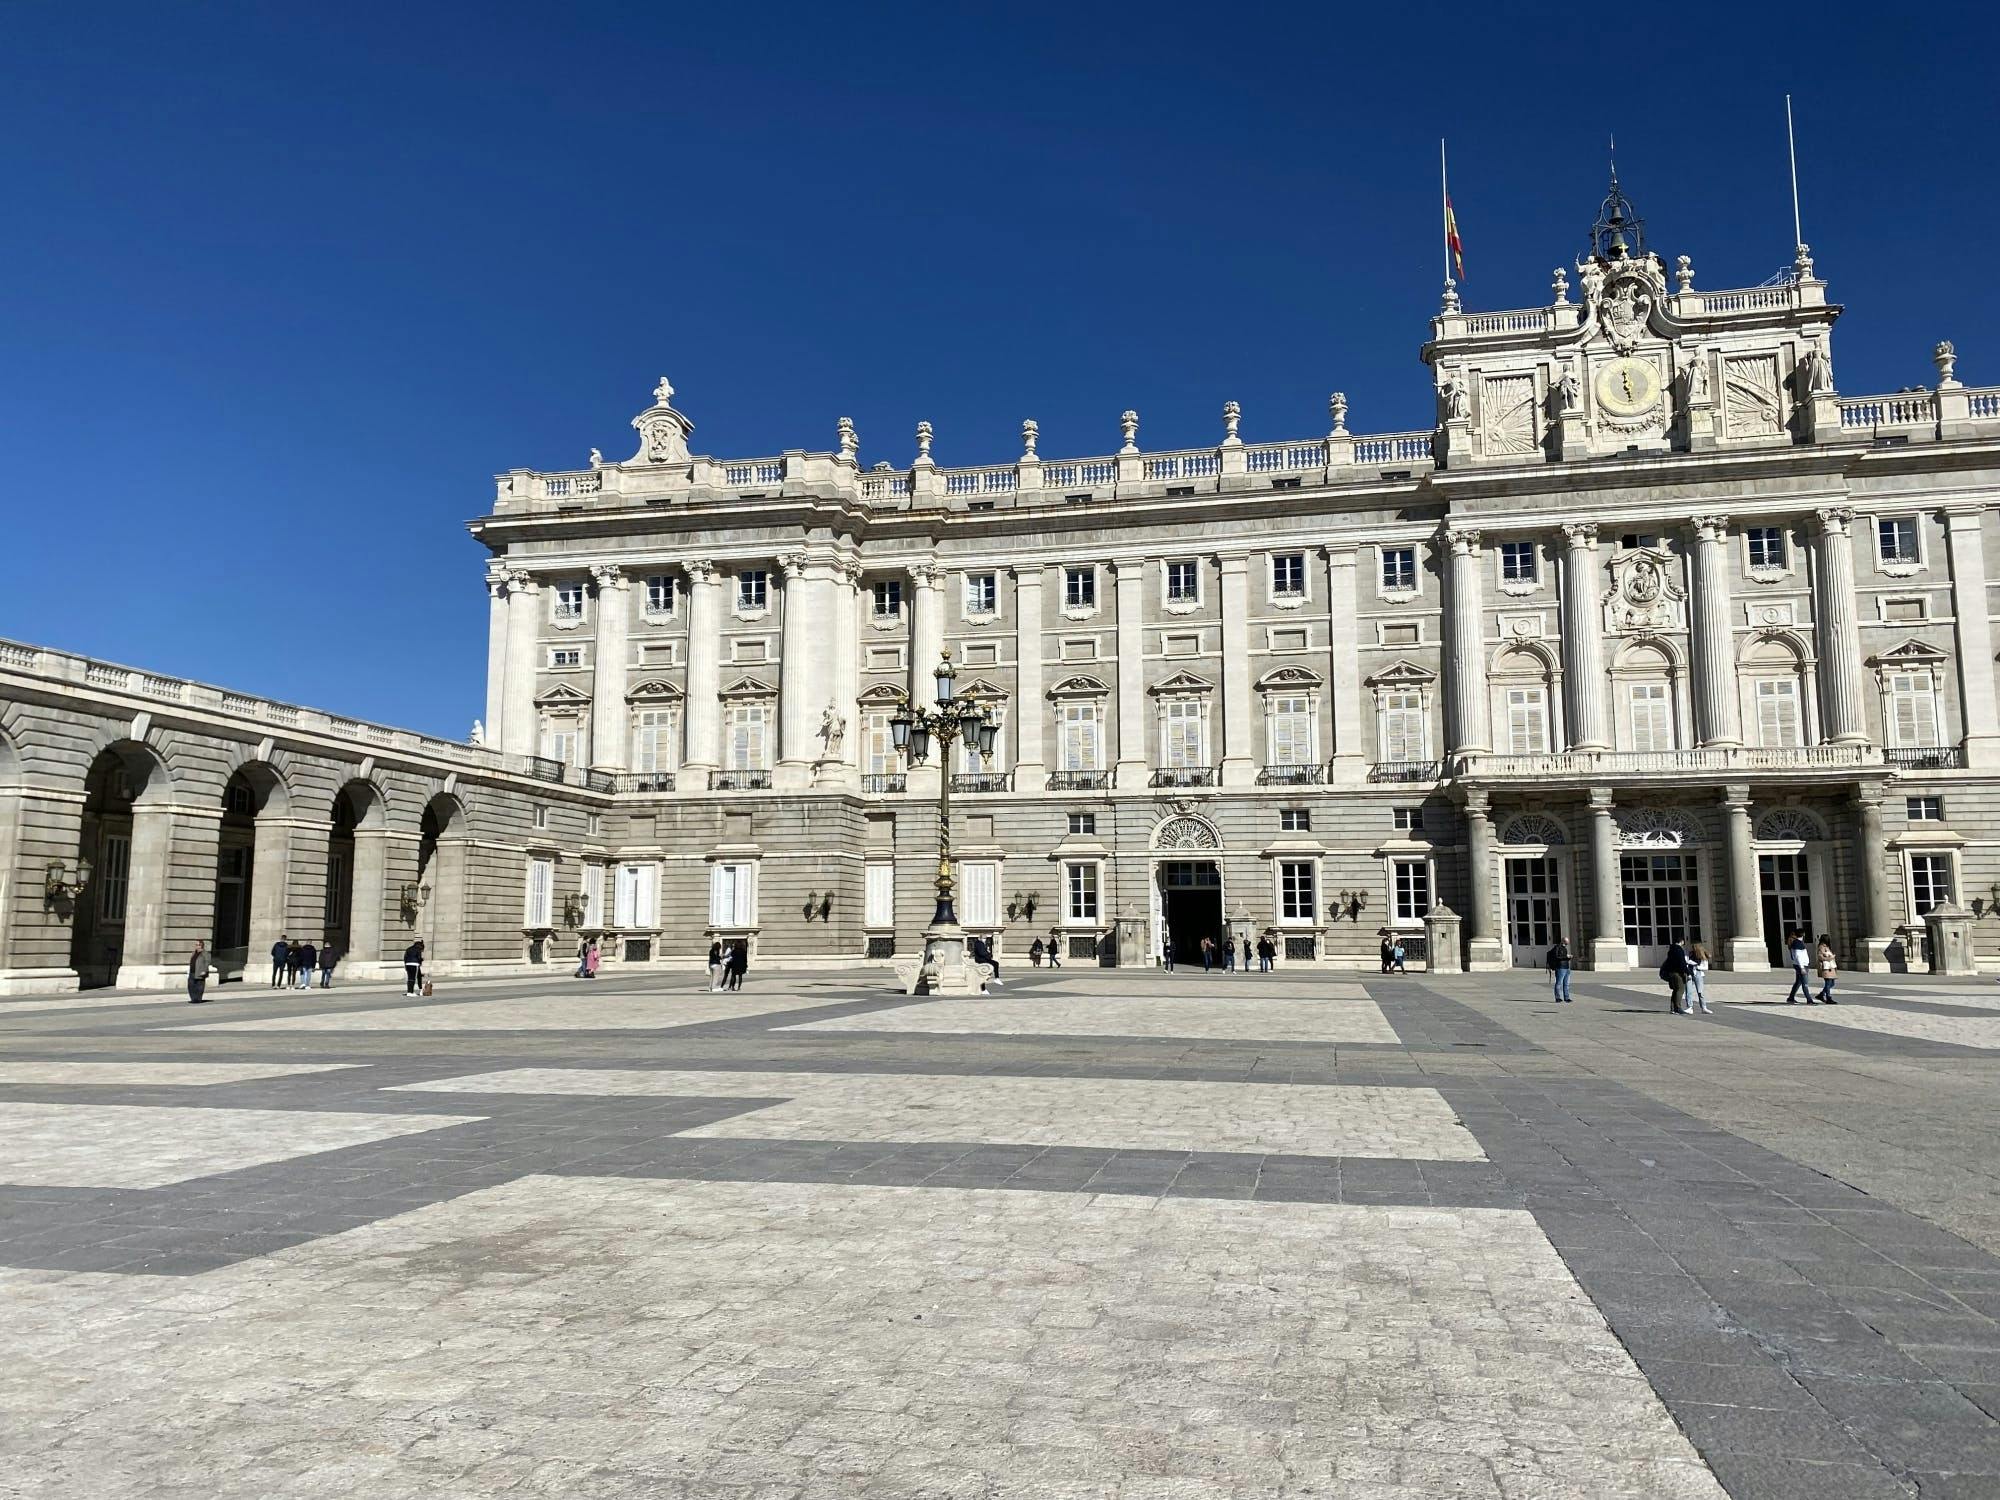 Visita guiada a la Galería de las Colecciones Reales y al Palacio Real en inglés